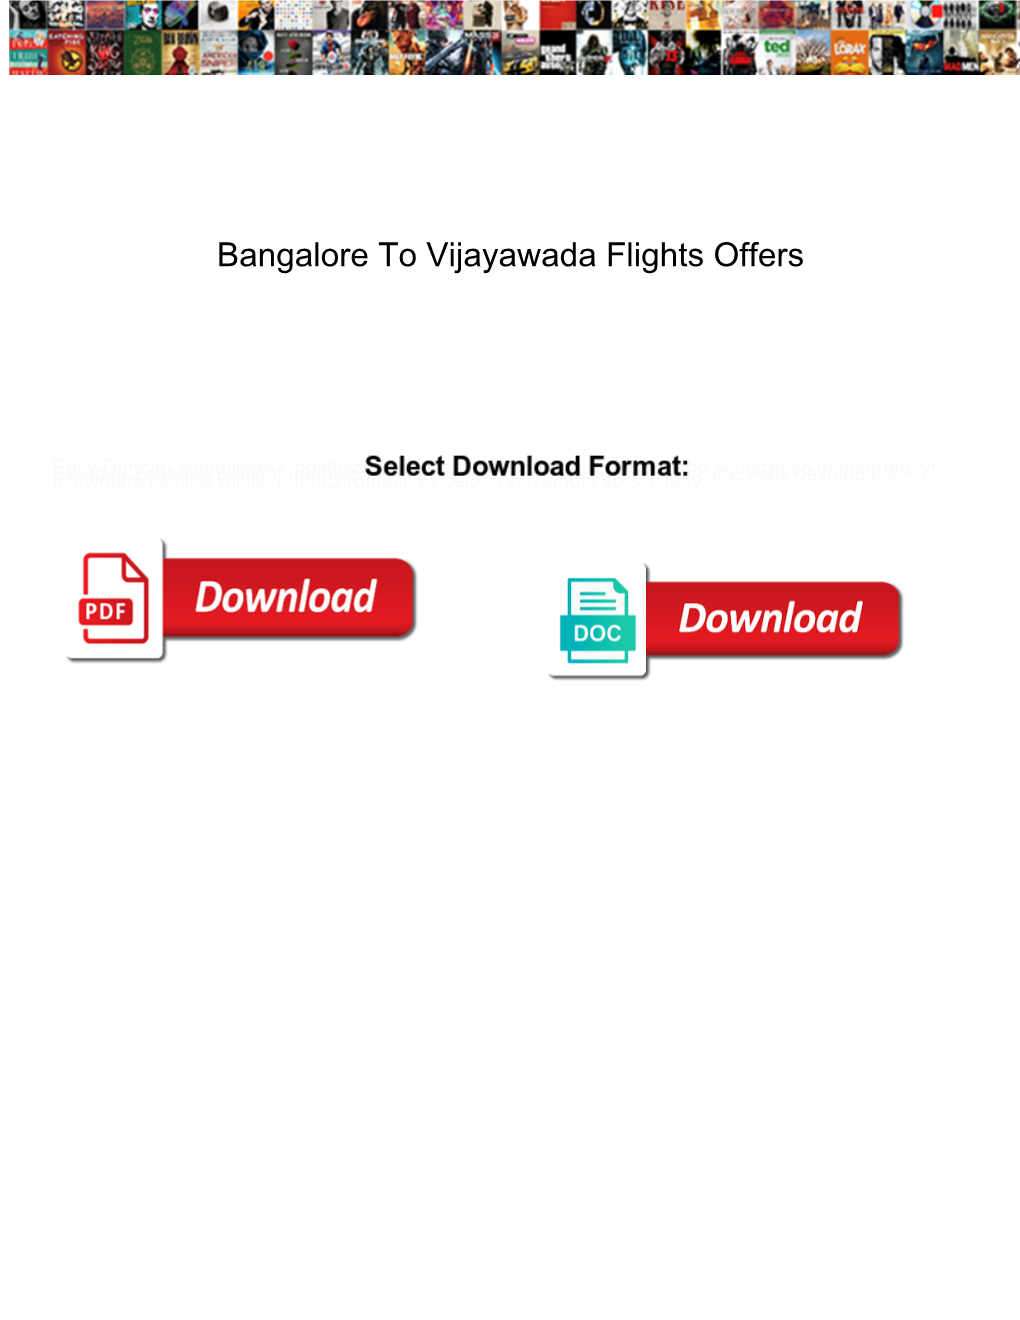 Bangalore to Vijayawada Flights Offers